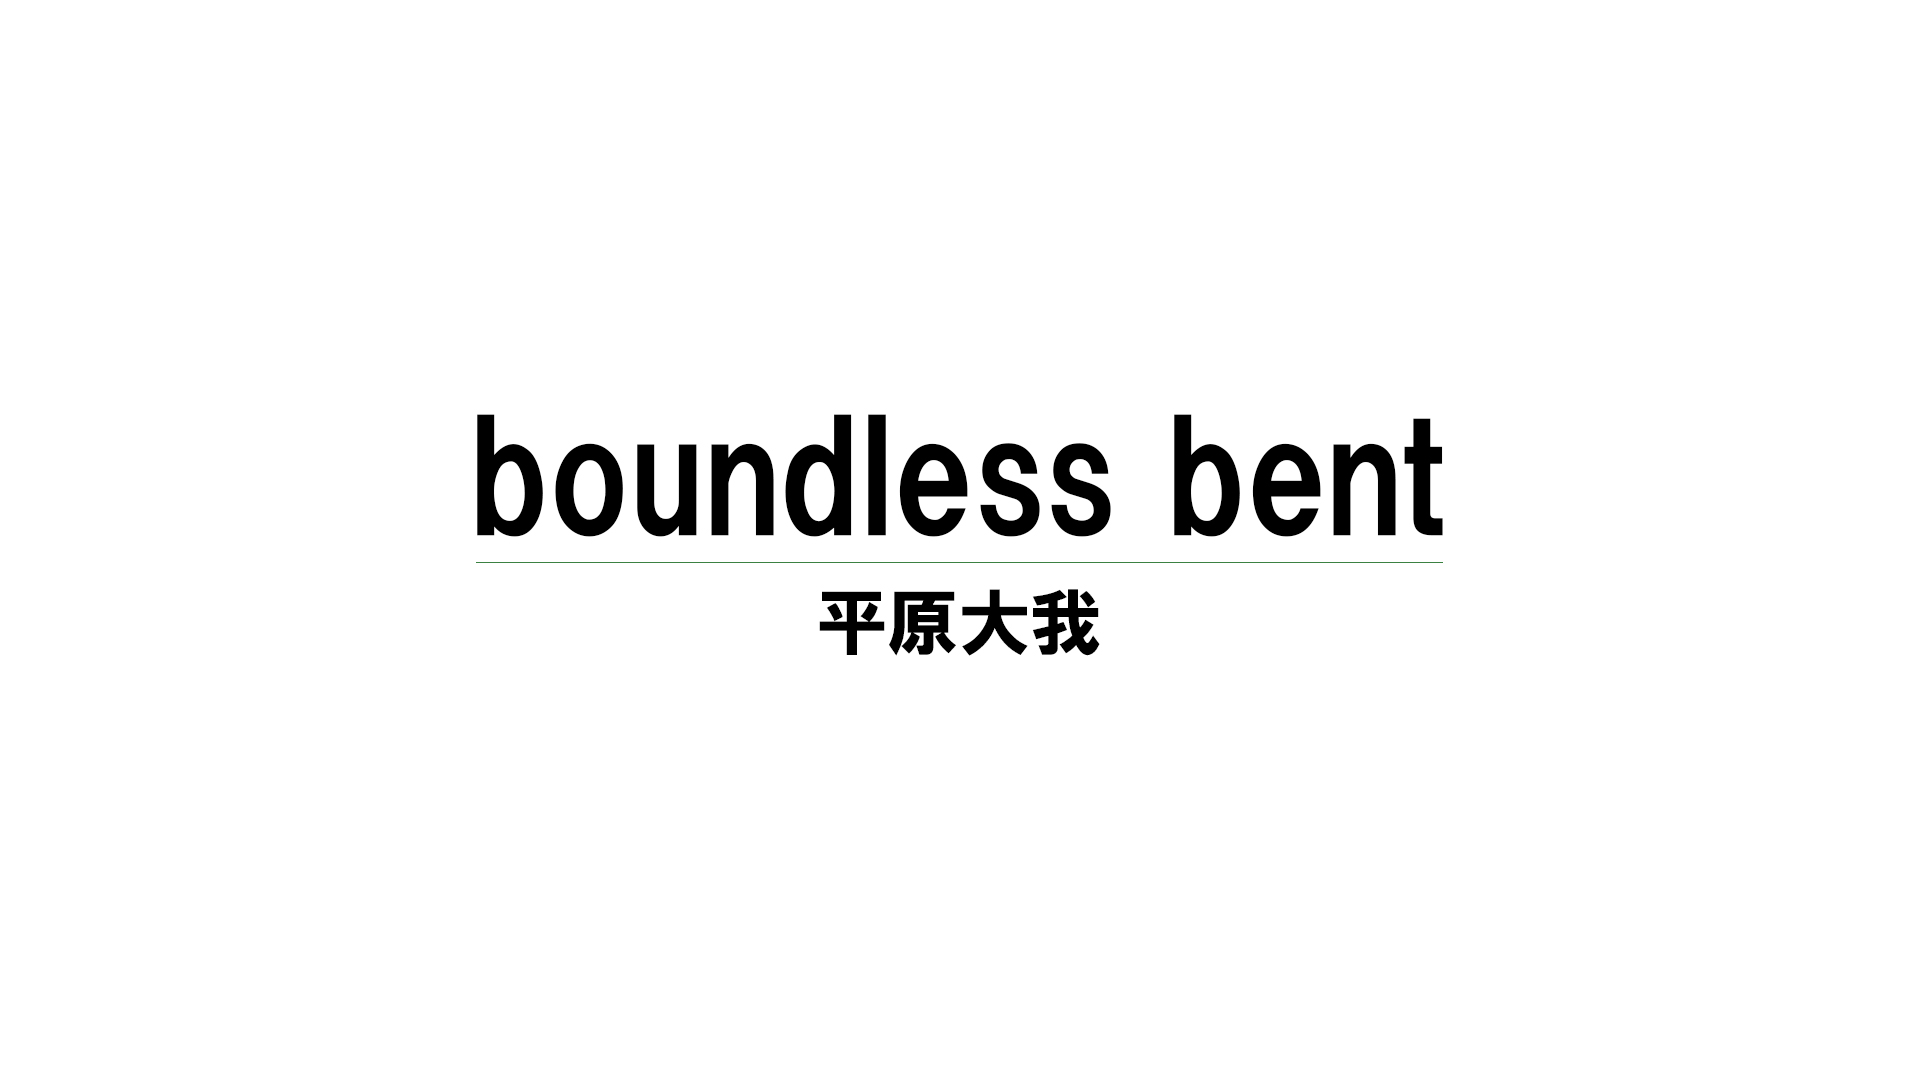 boundless bent